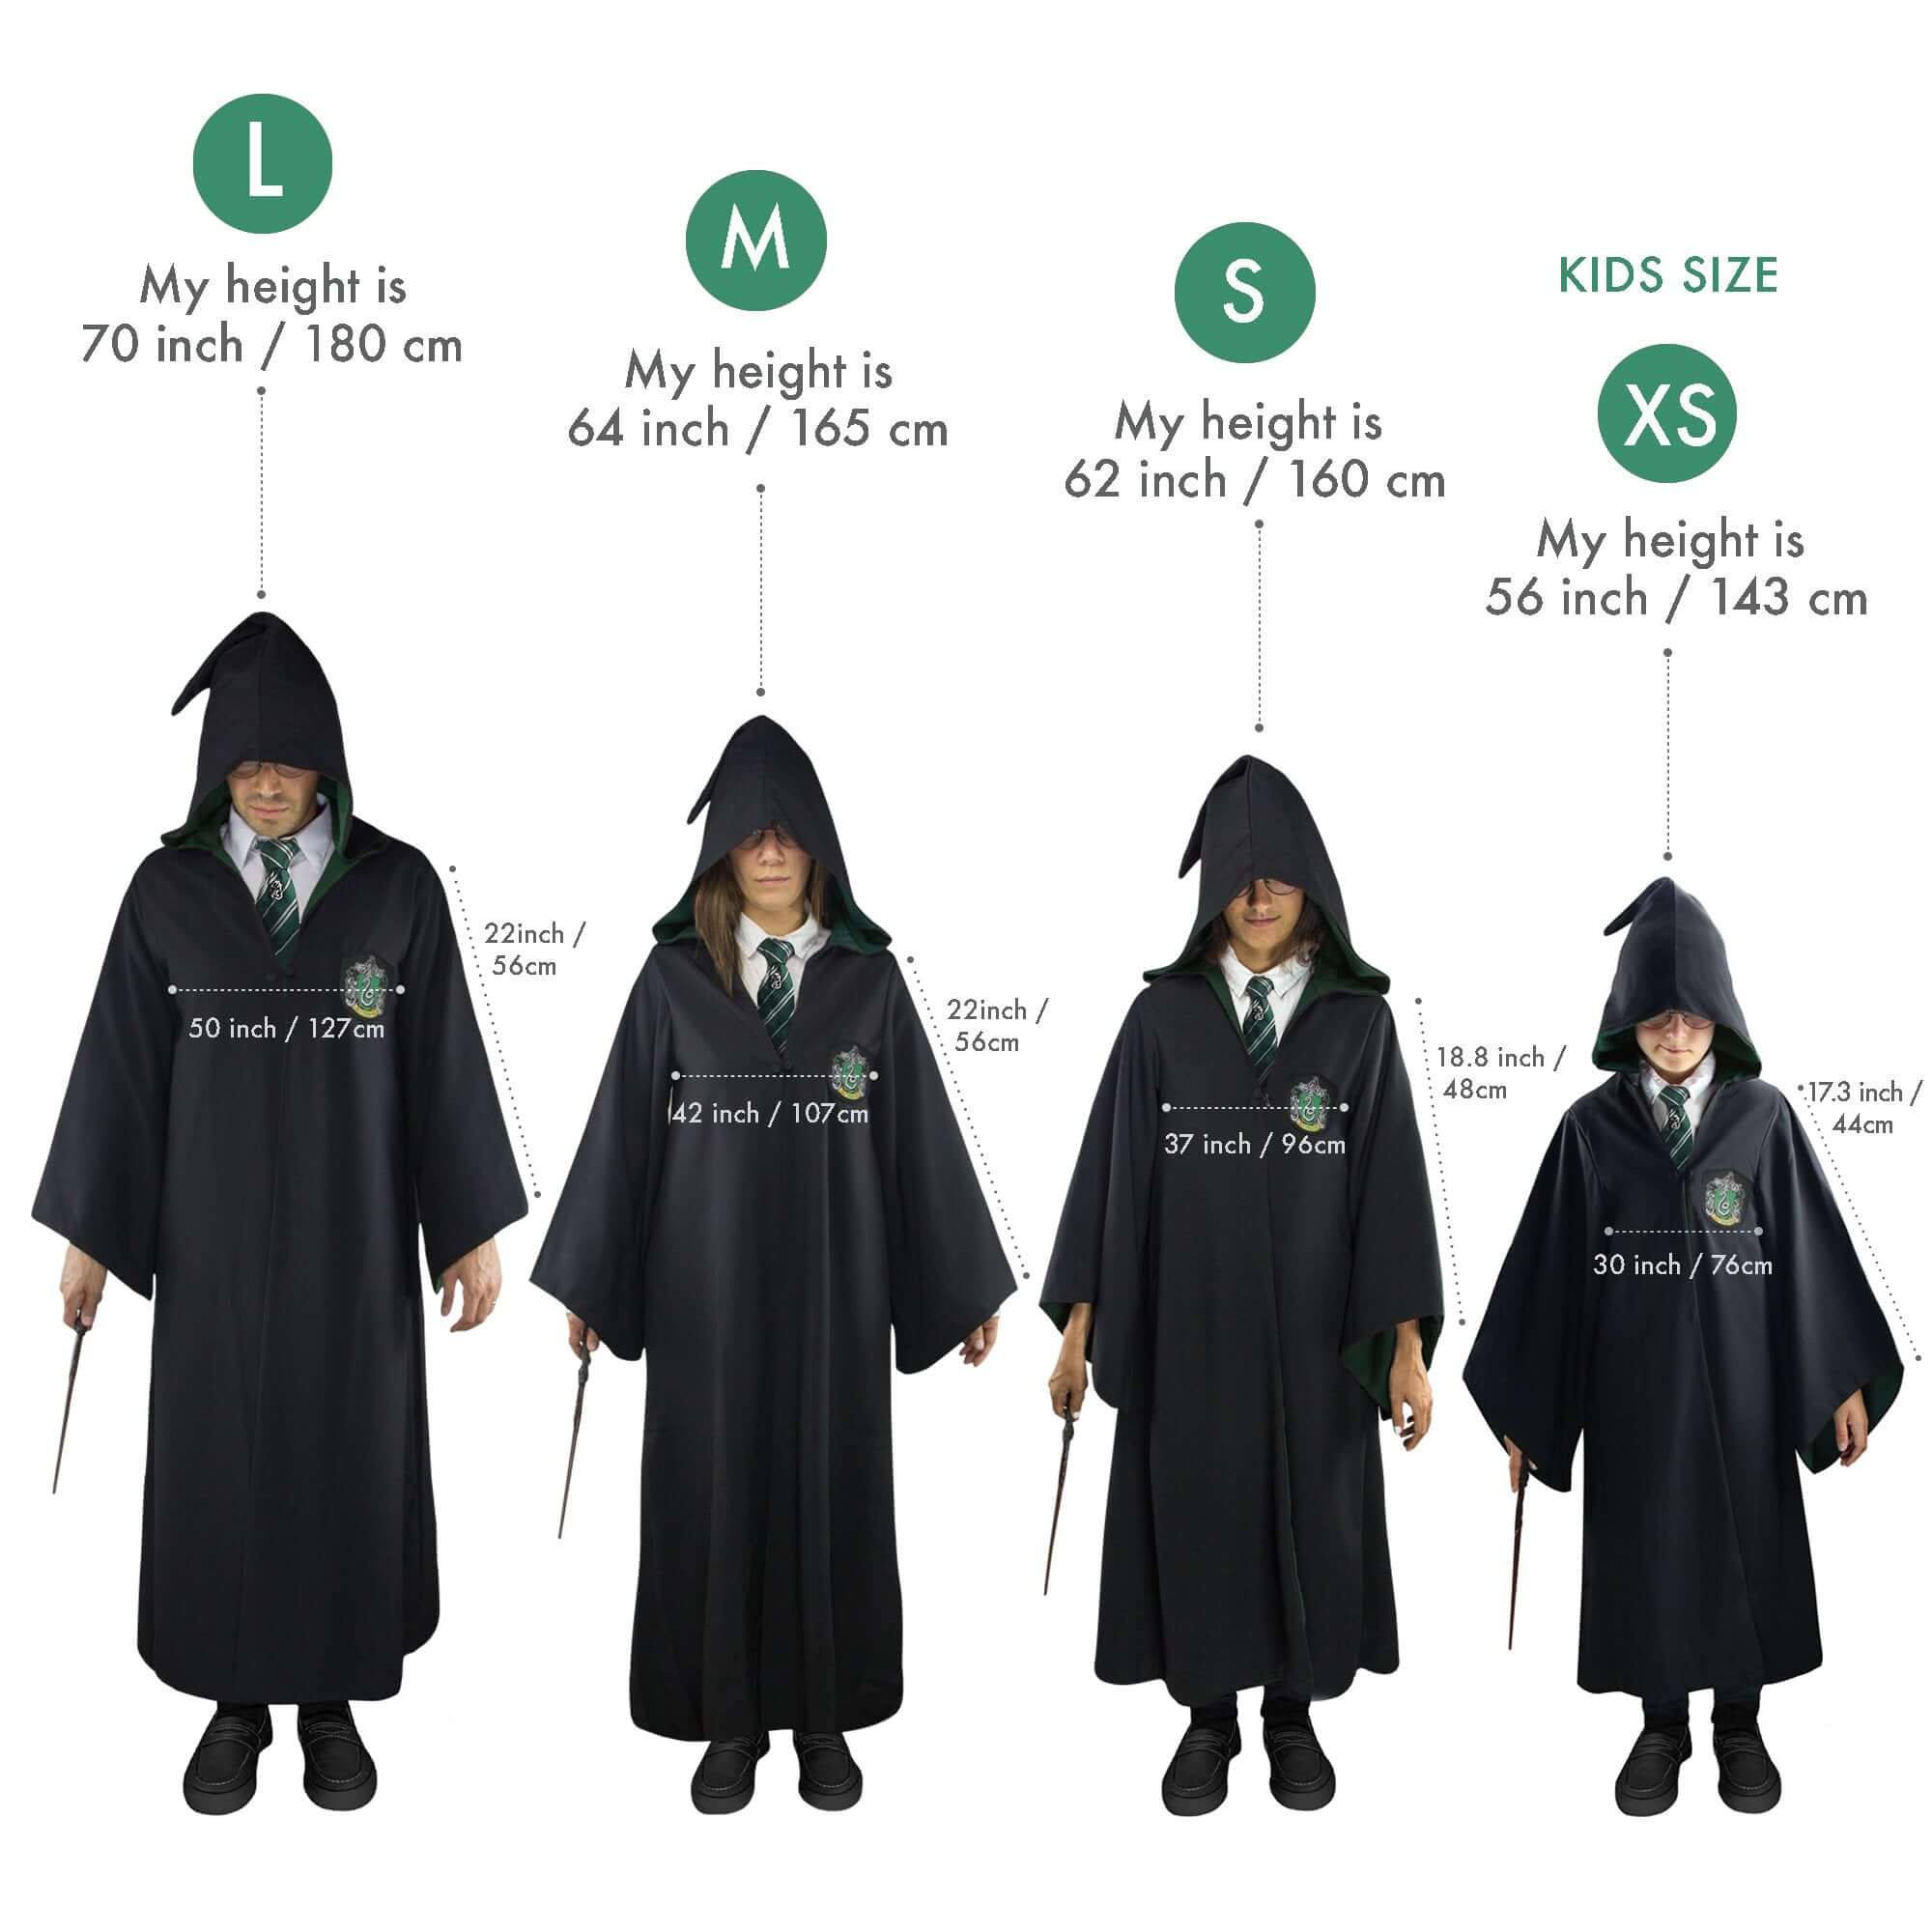 Kids Slytherin Robe, Harry Potter